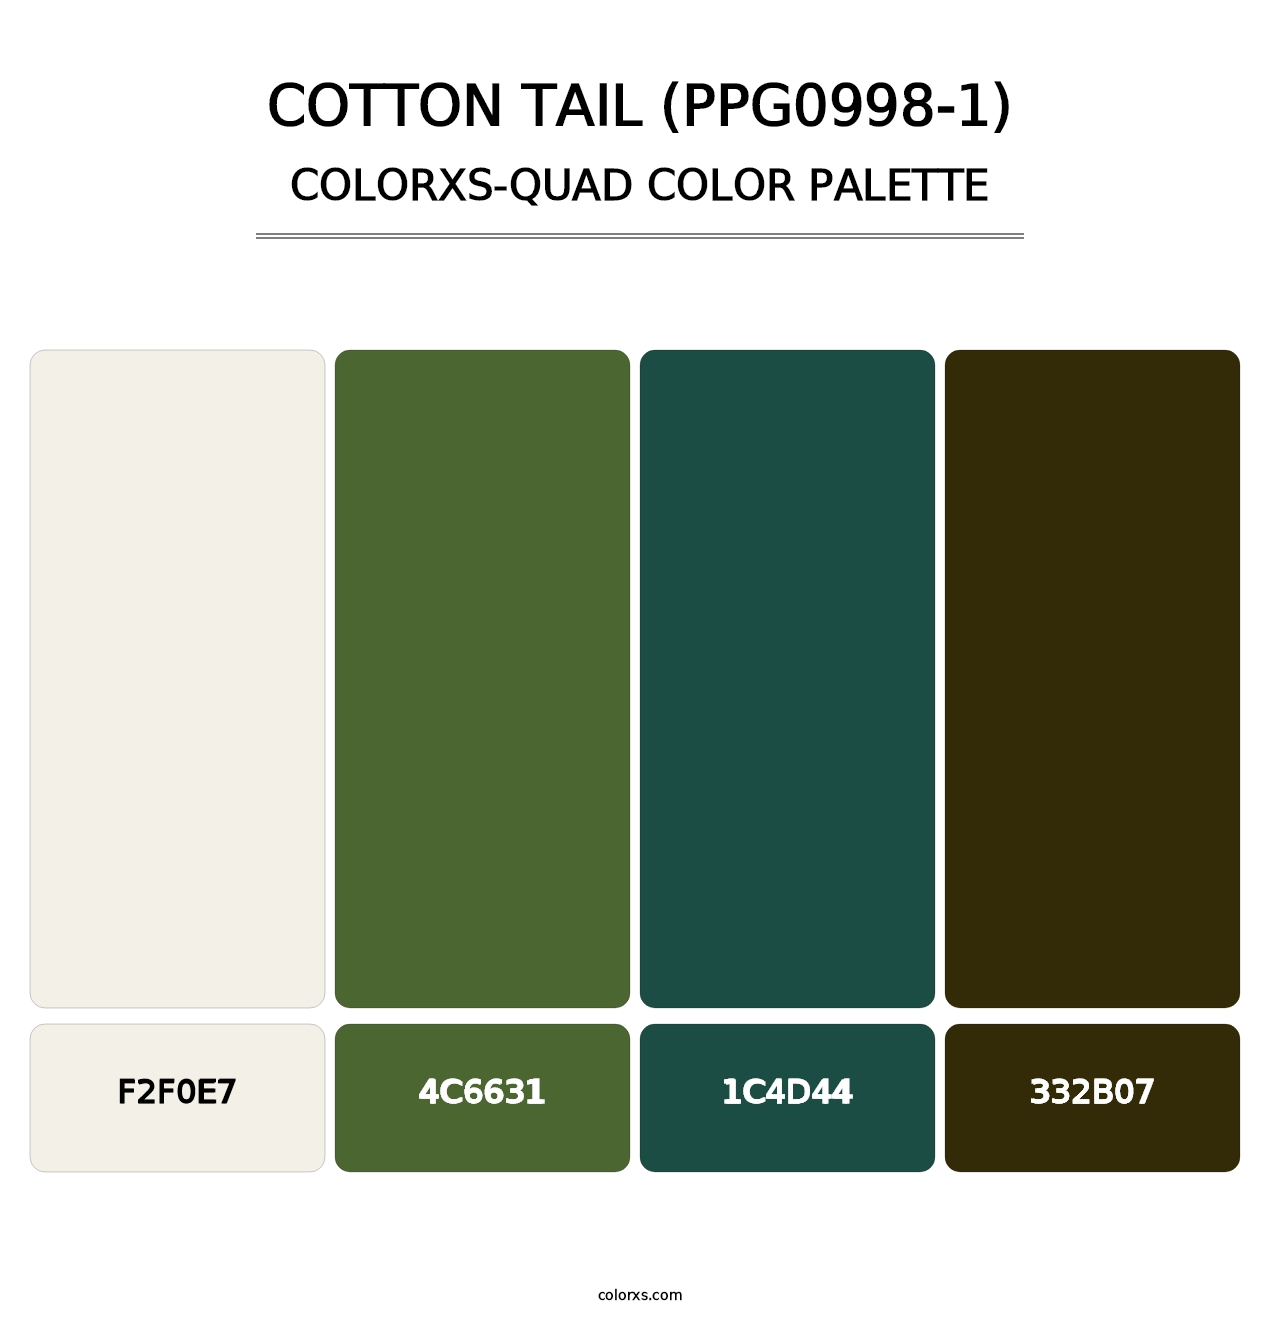 Cotton Tail (PPG0998-1) - Colorxs Quad Palette